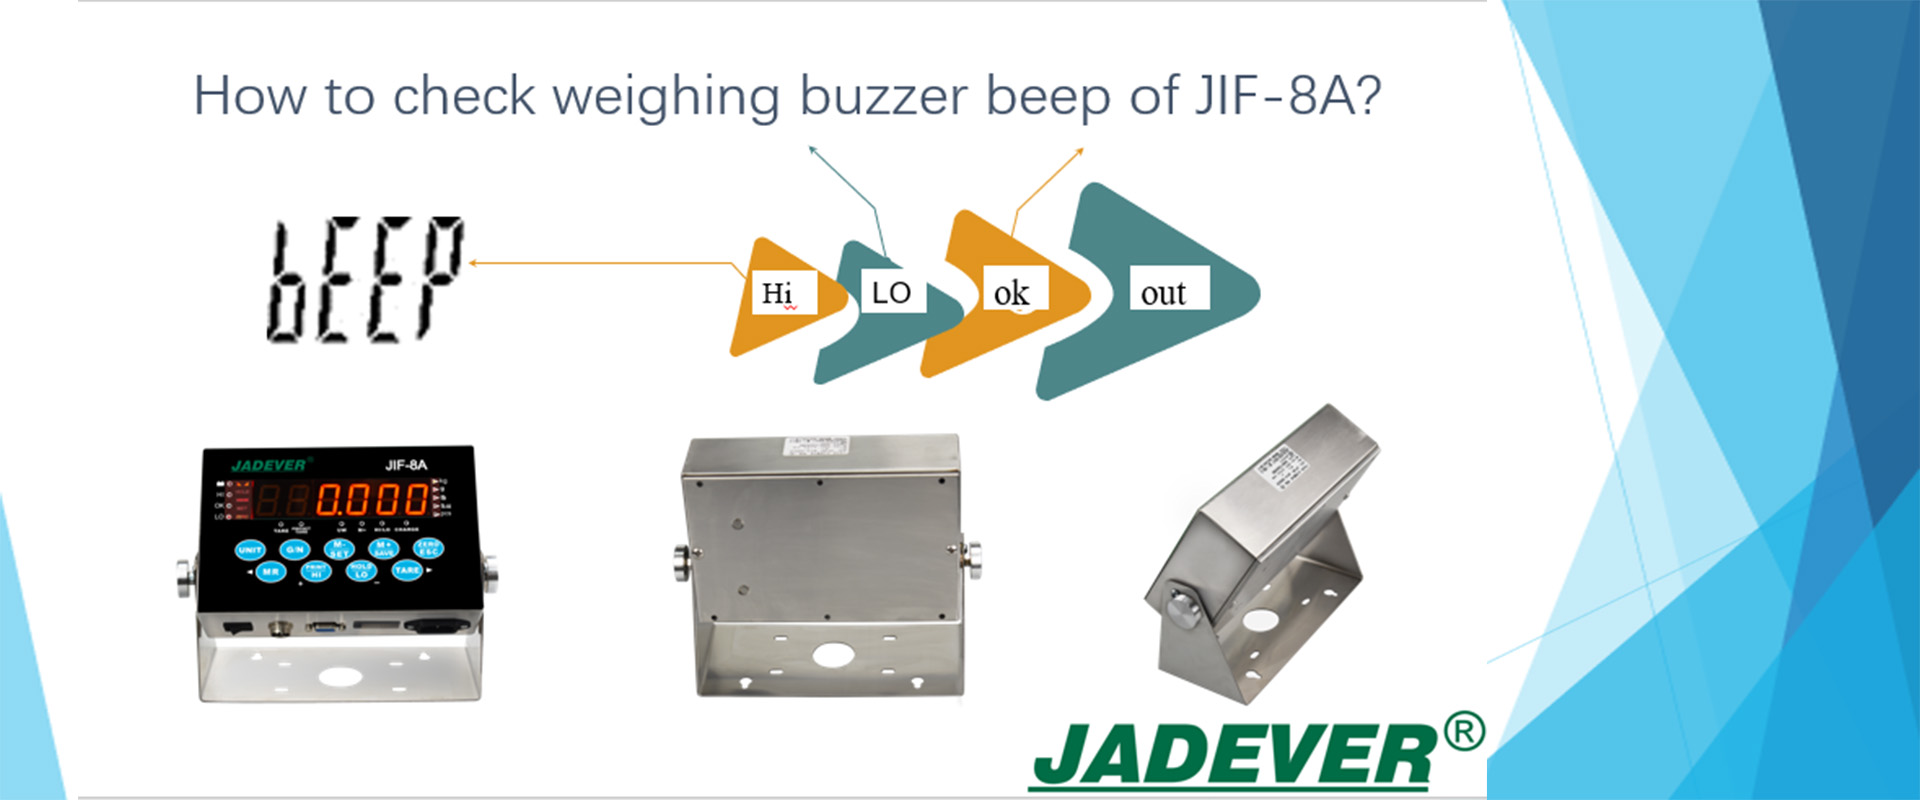 كيفية التحقق من صوت صفارة وزن JIF-8A؟
